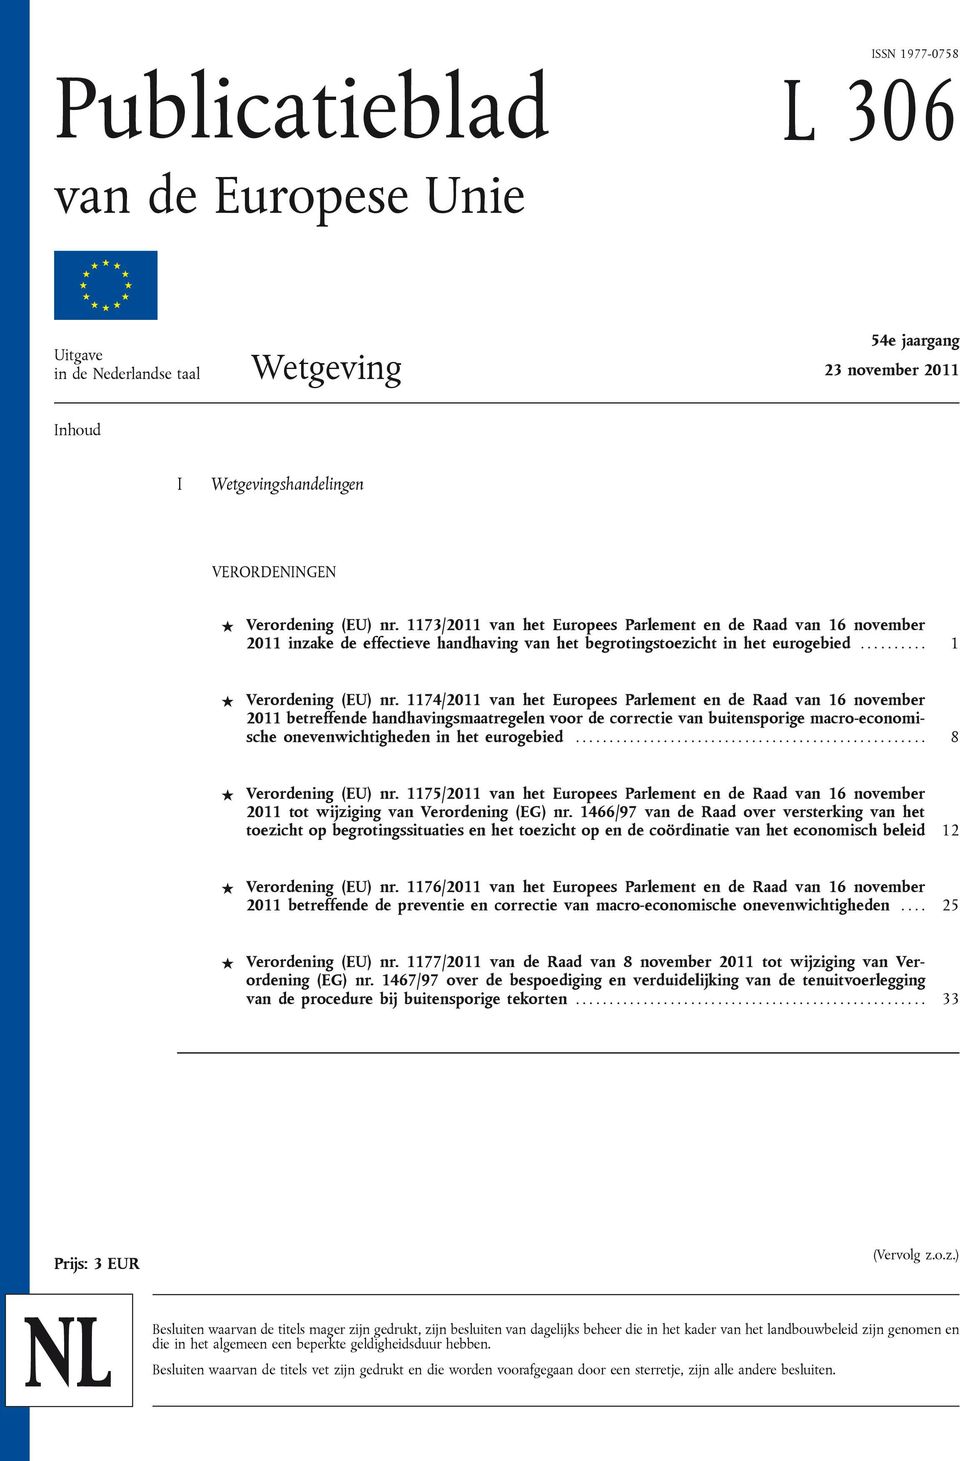 1174/2011 van het Europees Parlement en de Raad van 16 november 2011 betreffende handhavingsmaatregelen voor de correctie van buitensporige macro-economische onevenwichtigheden in het eurogebied.